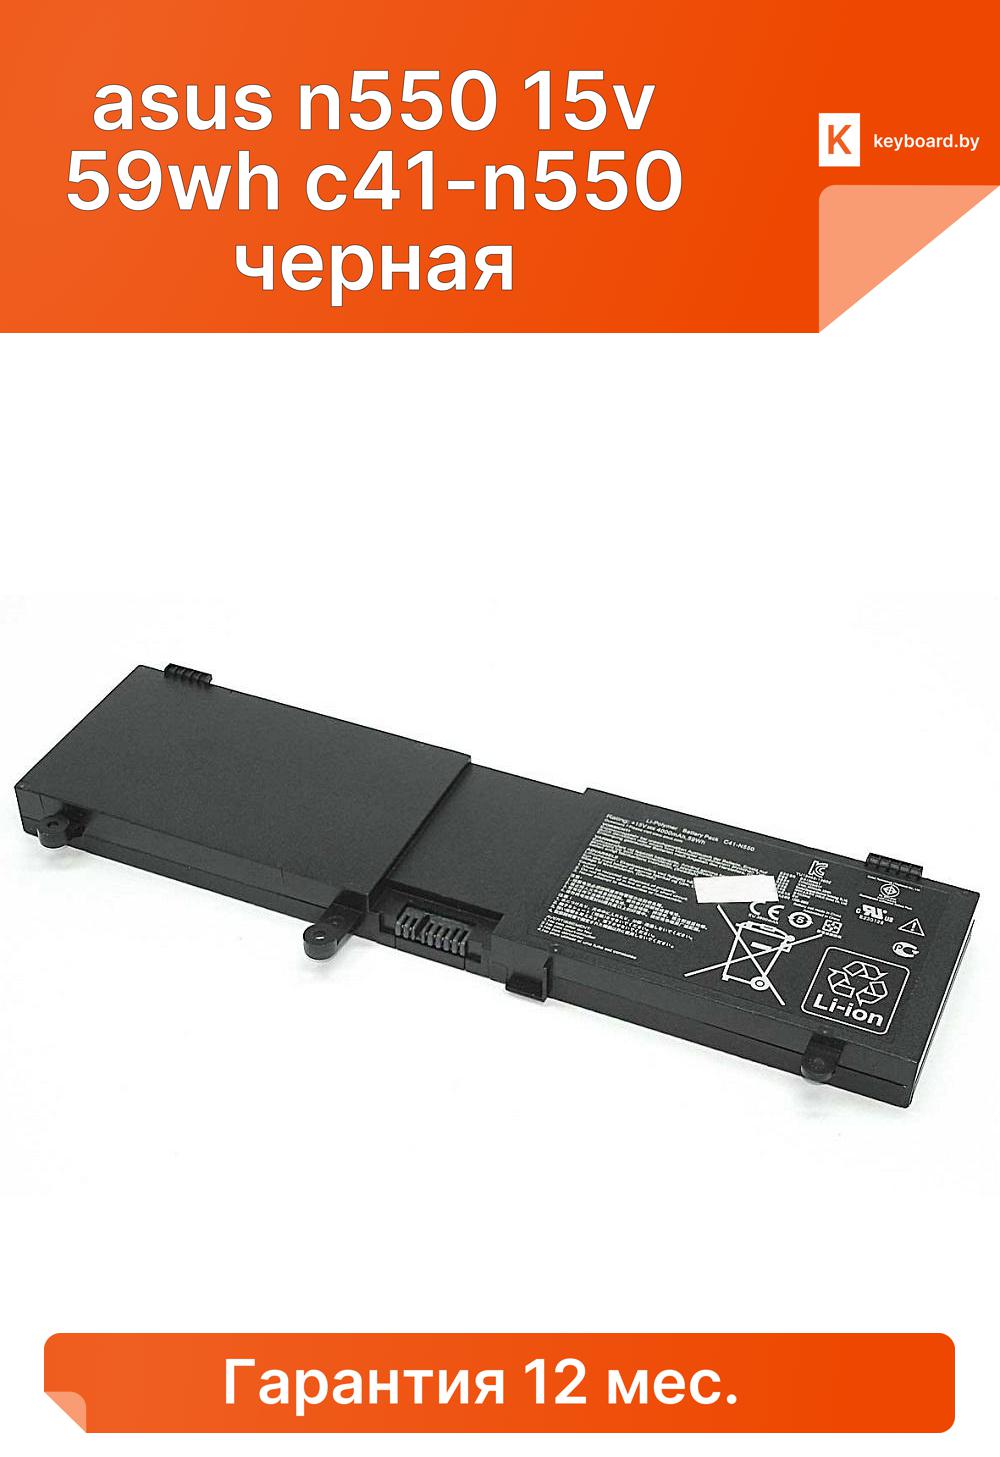 Аккумуляторная батарея для ноутбука asus n550 15v 59wh c41-n550 черная